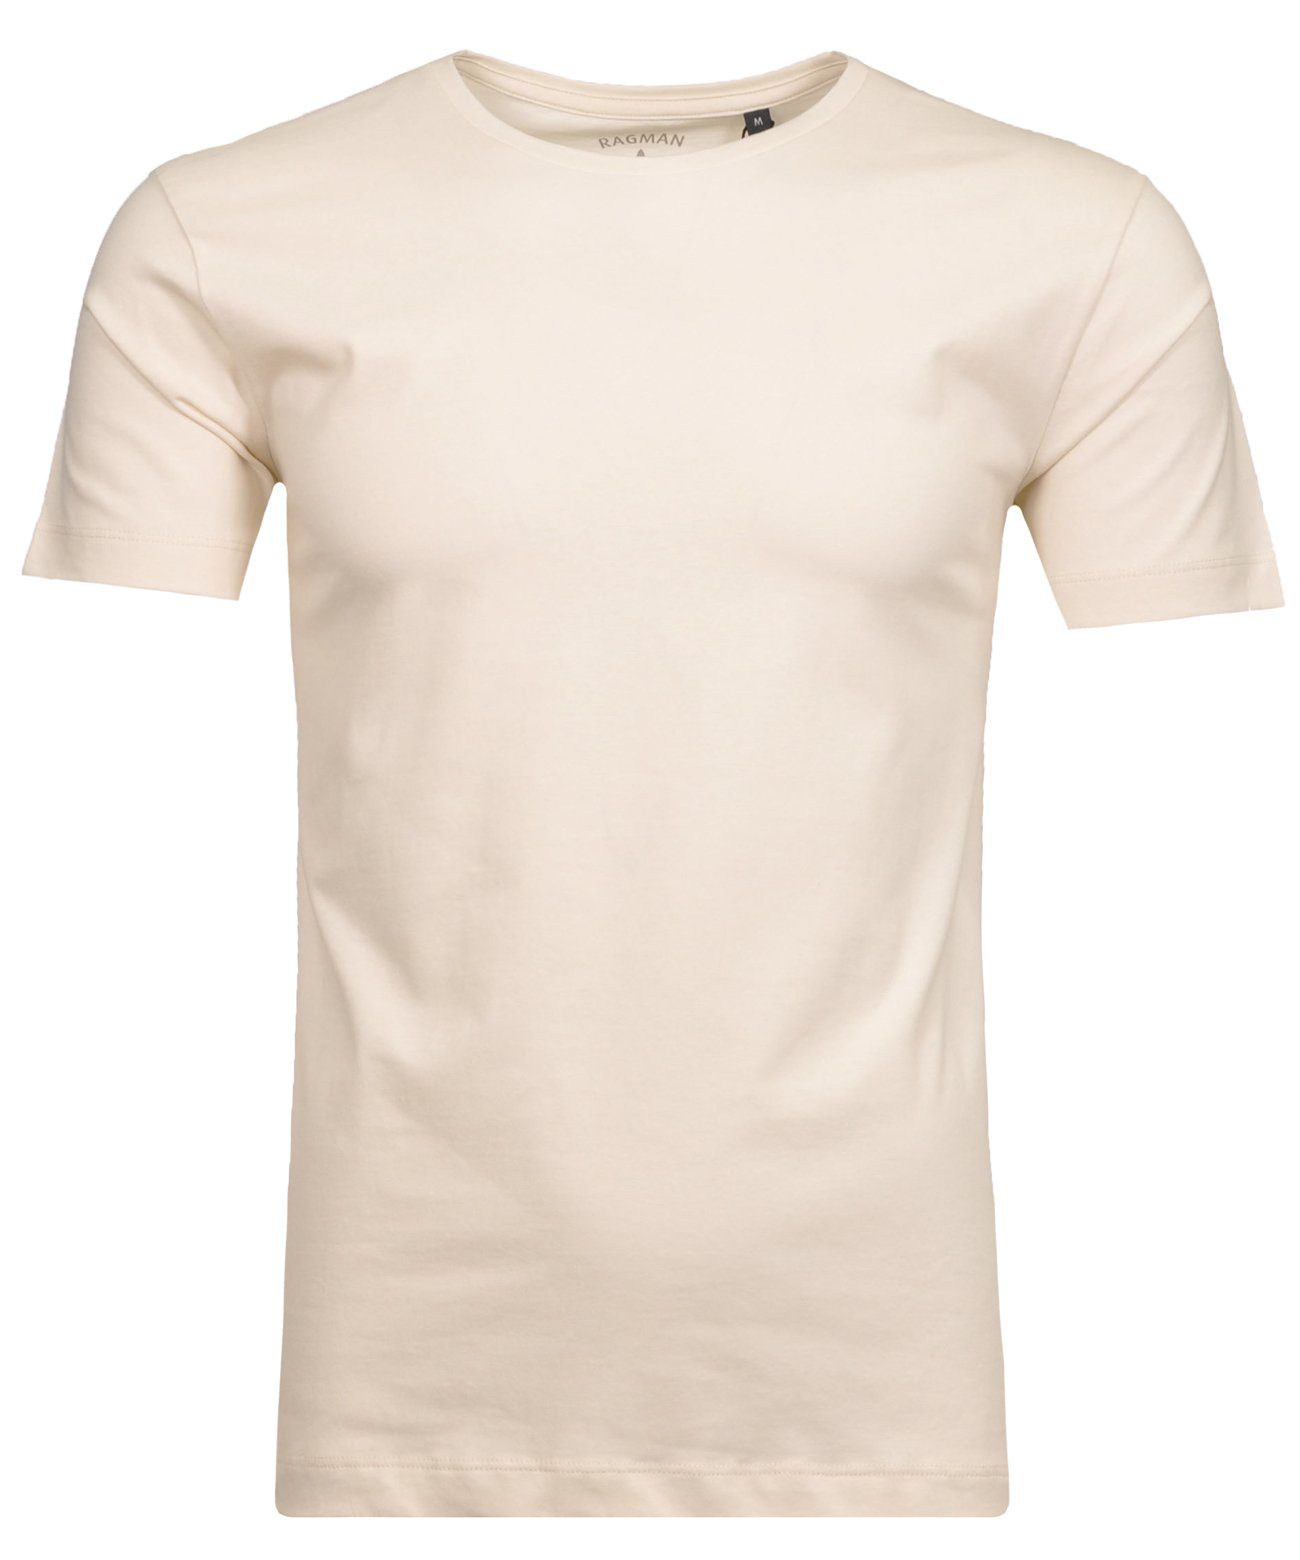 RAGMAN Ecru-004 T-Shirt